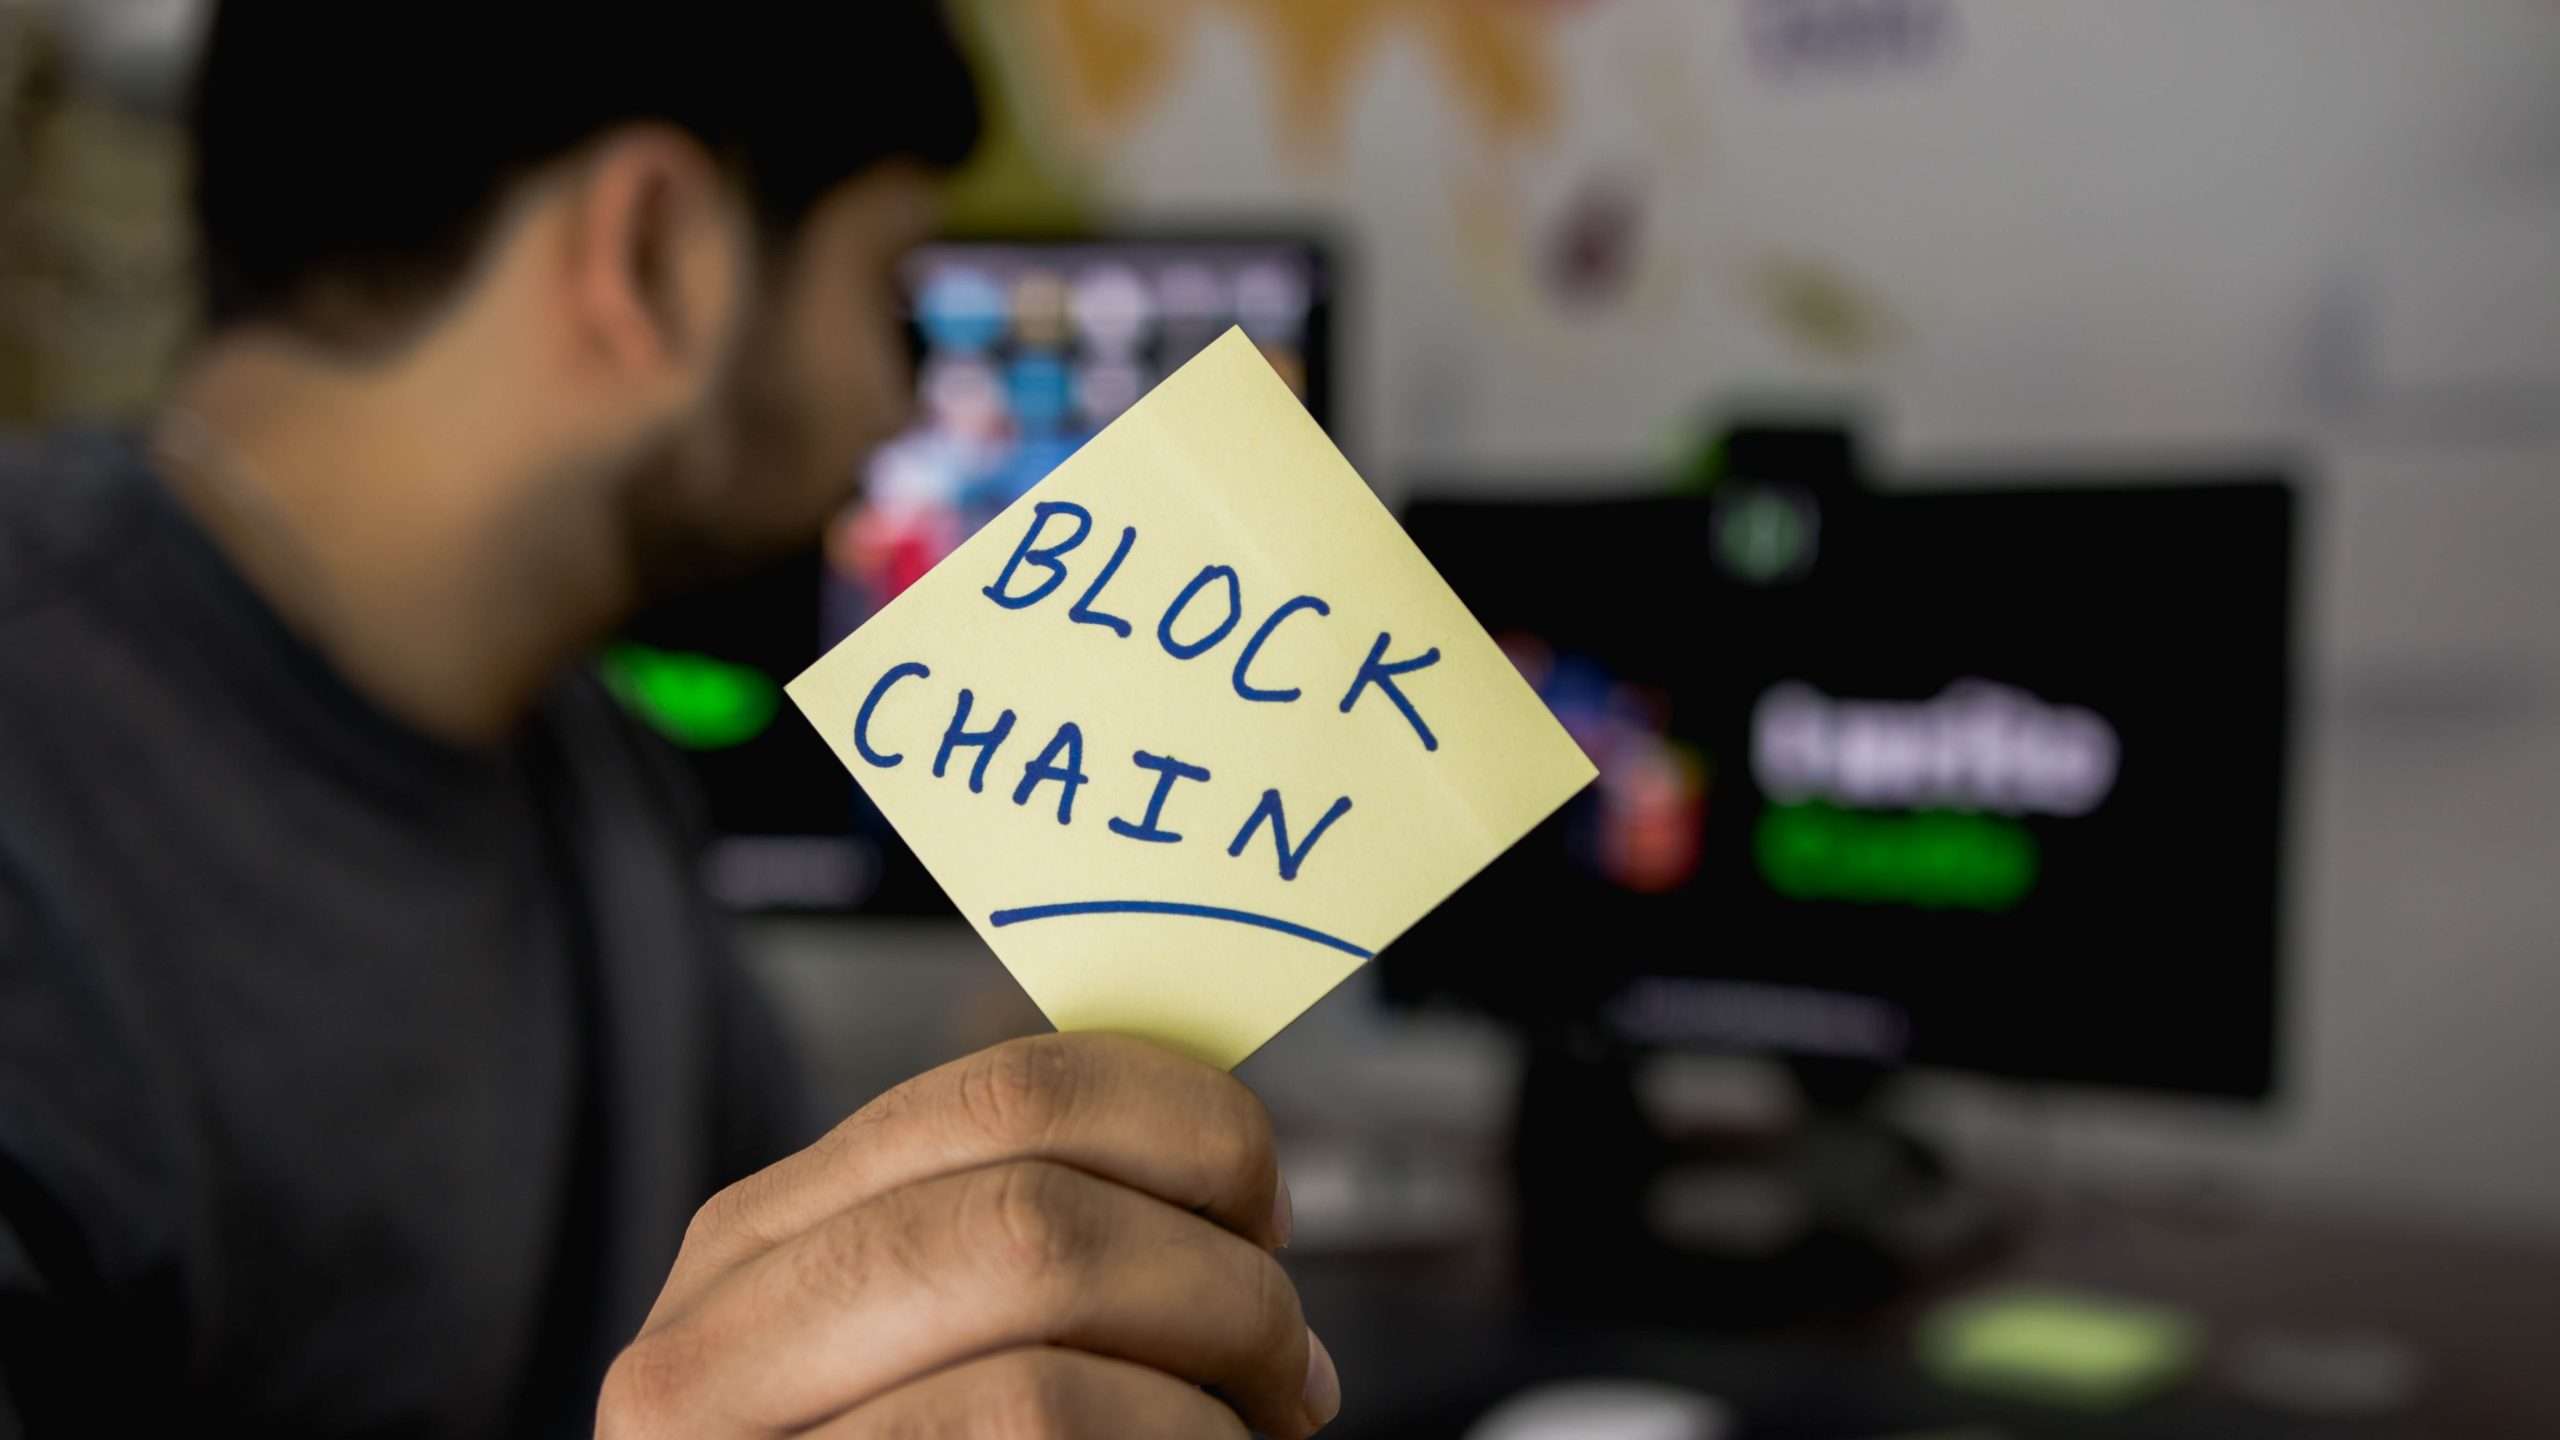 Blockchain.com Shuts its London Asset Management Division Amid Dire Macroeconomic Conditions